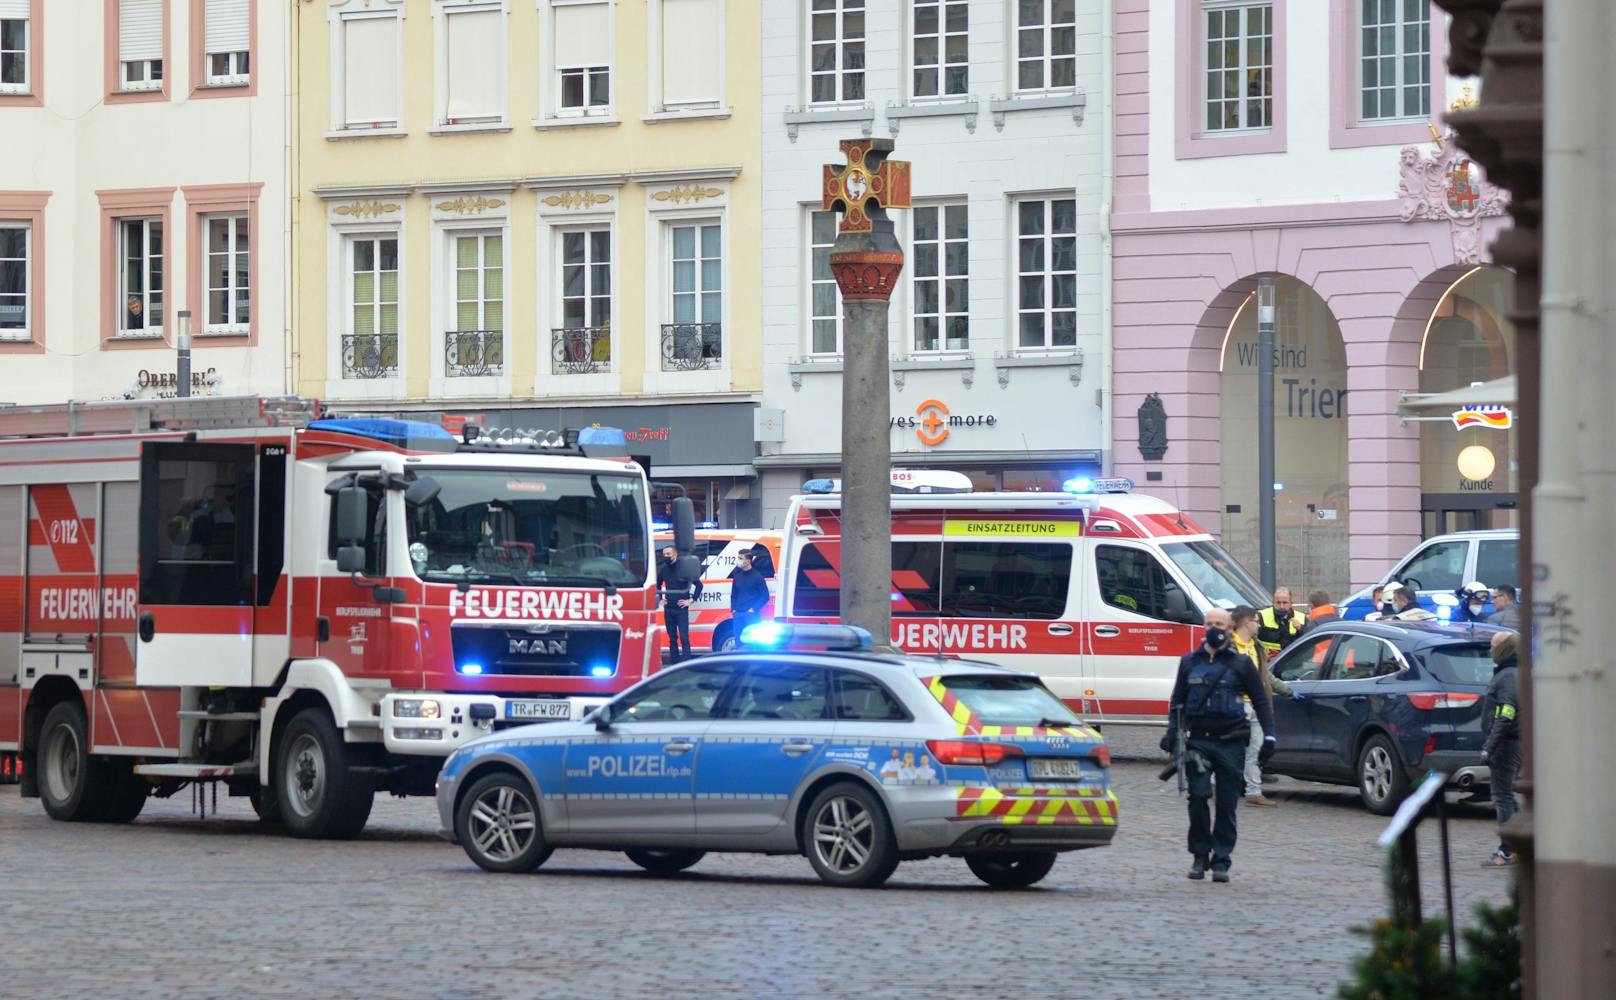 Die Mutter des Kindes und der eineinhalb Jahre alter Sohn des Ehepaares wurden bei dem Vorfall ebenfalls verletzt und werden derzeit in einem Trierer Krankenhaus behandelt.